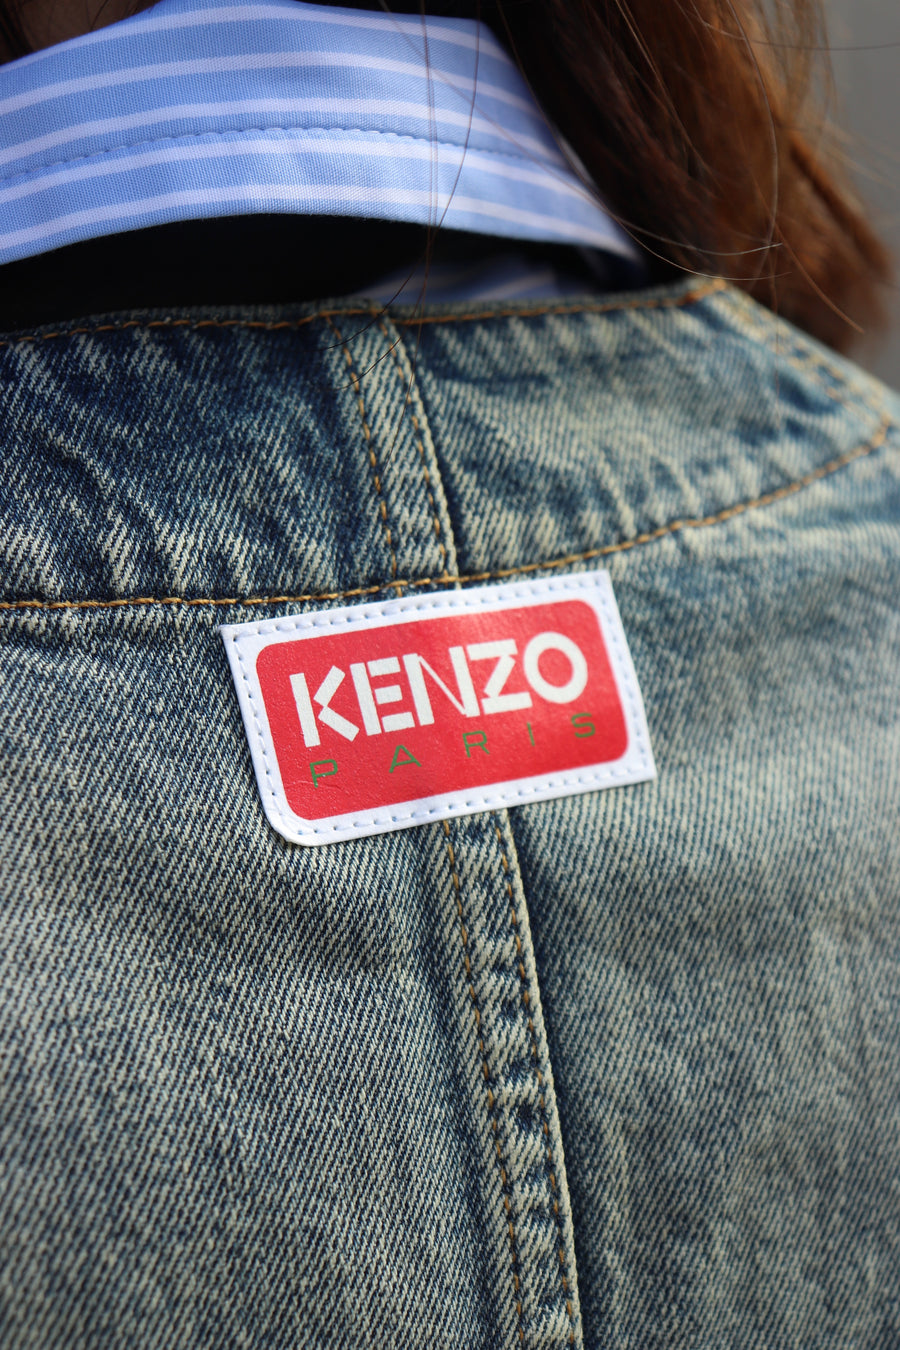 KENZO  Stone Bleach Workwear Jacket